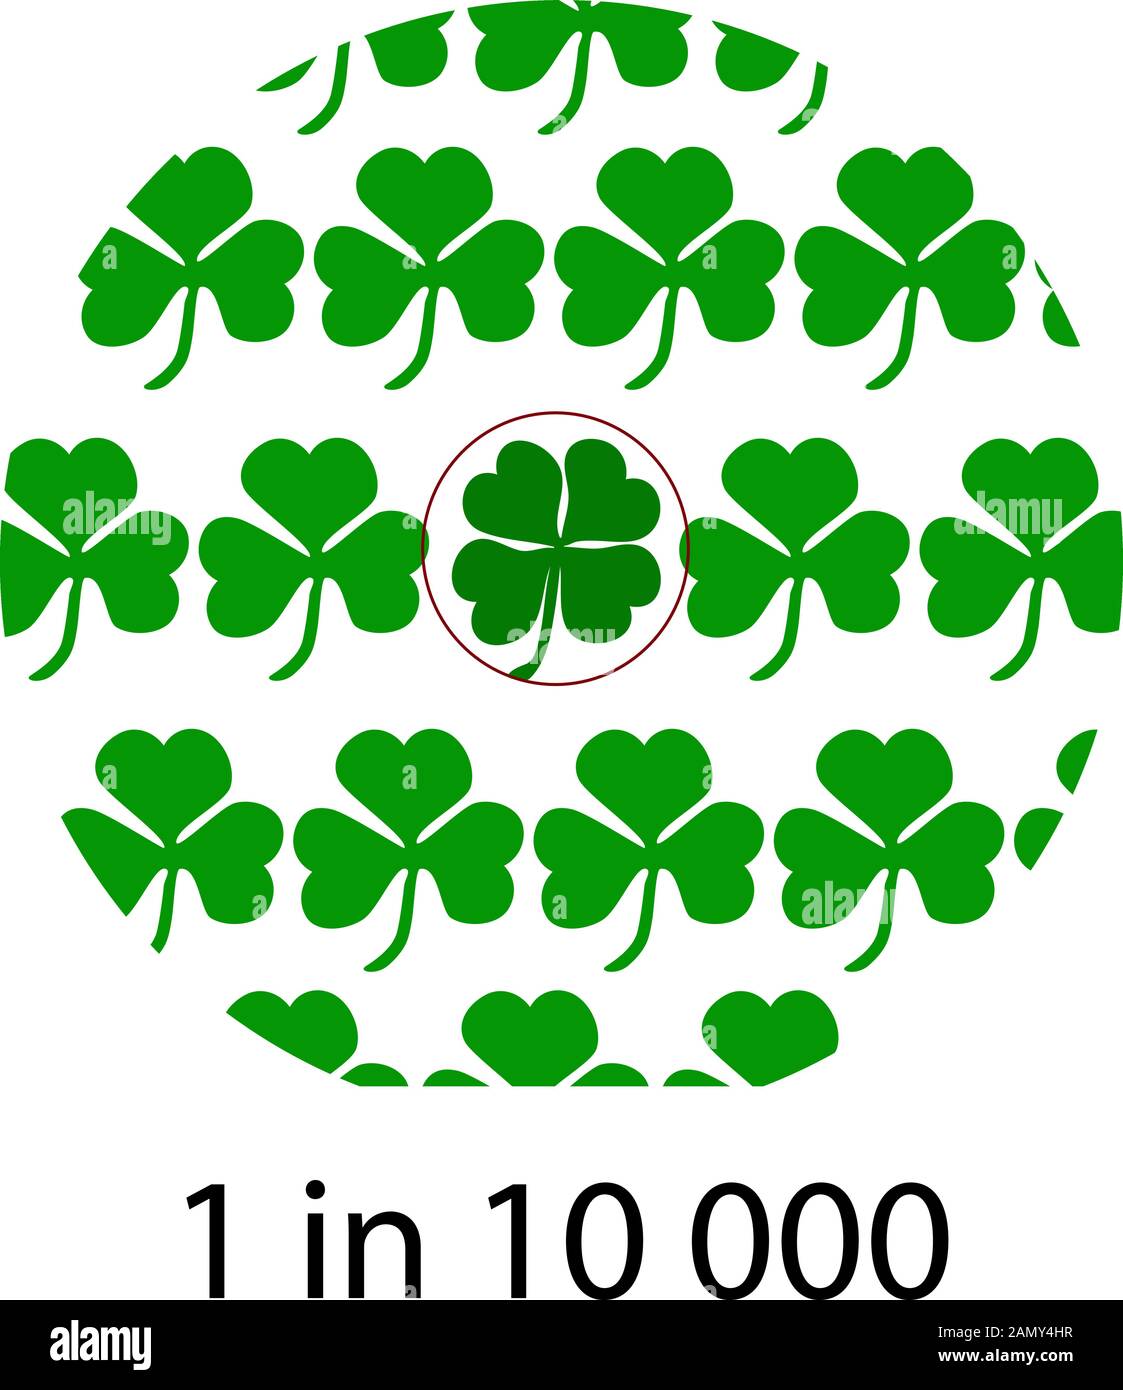 Vierblättriger Kleeblatt ist einer von 10.000. St. Patricks Day. Vektordarstellung auf isoliertem Hintergrund. Stock Vektor